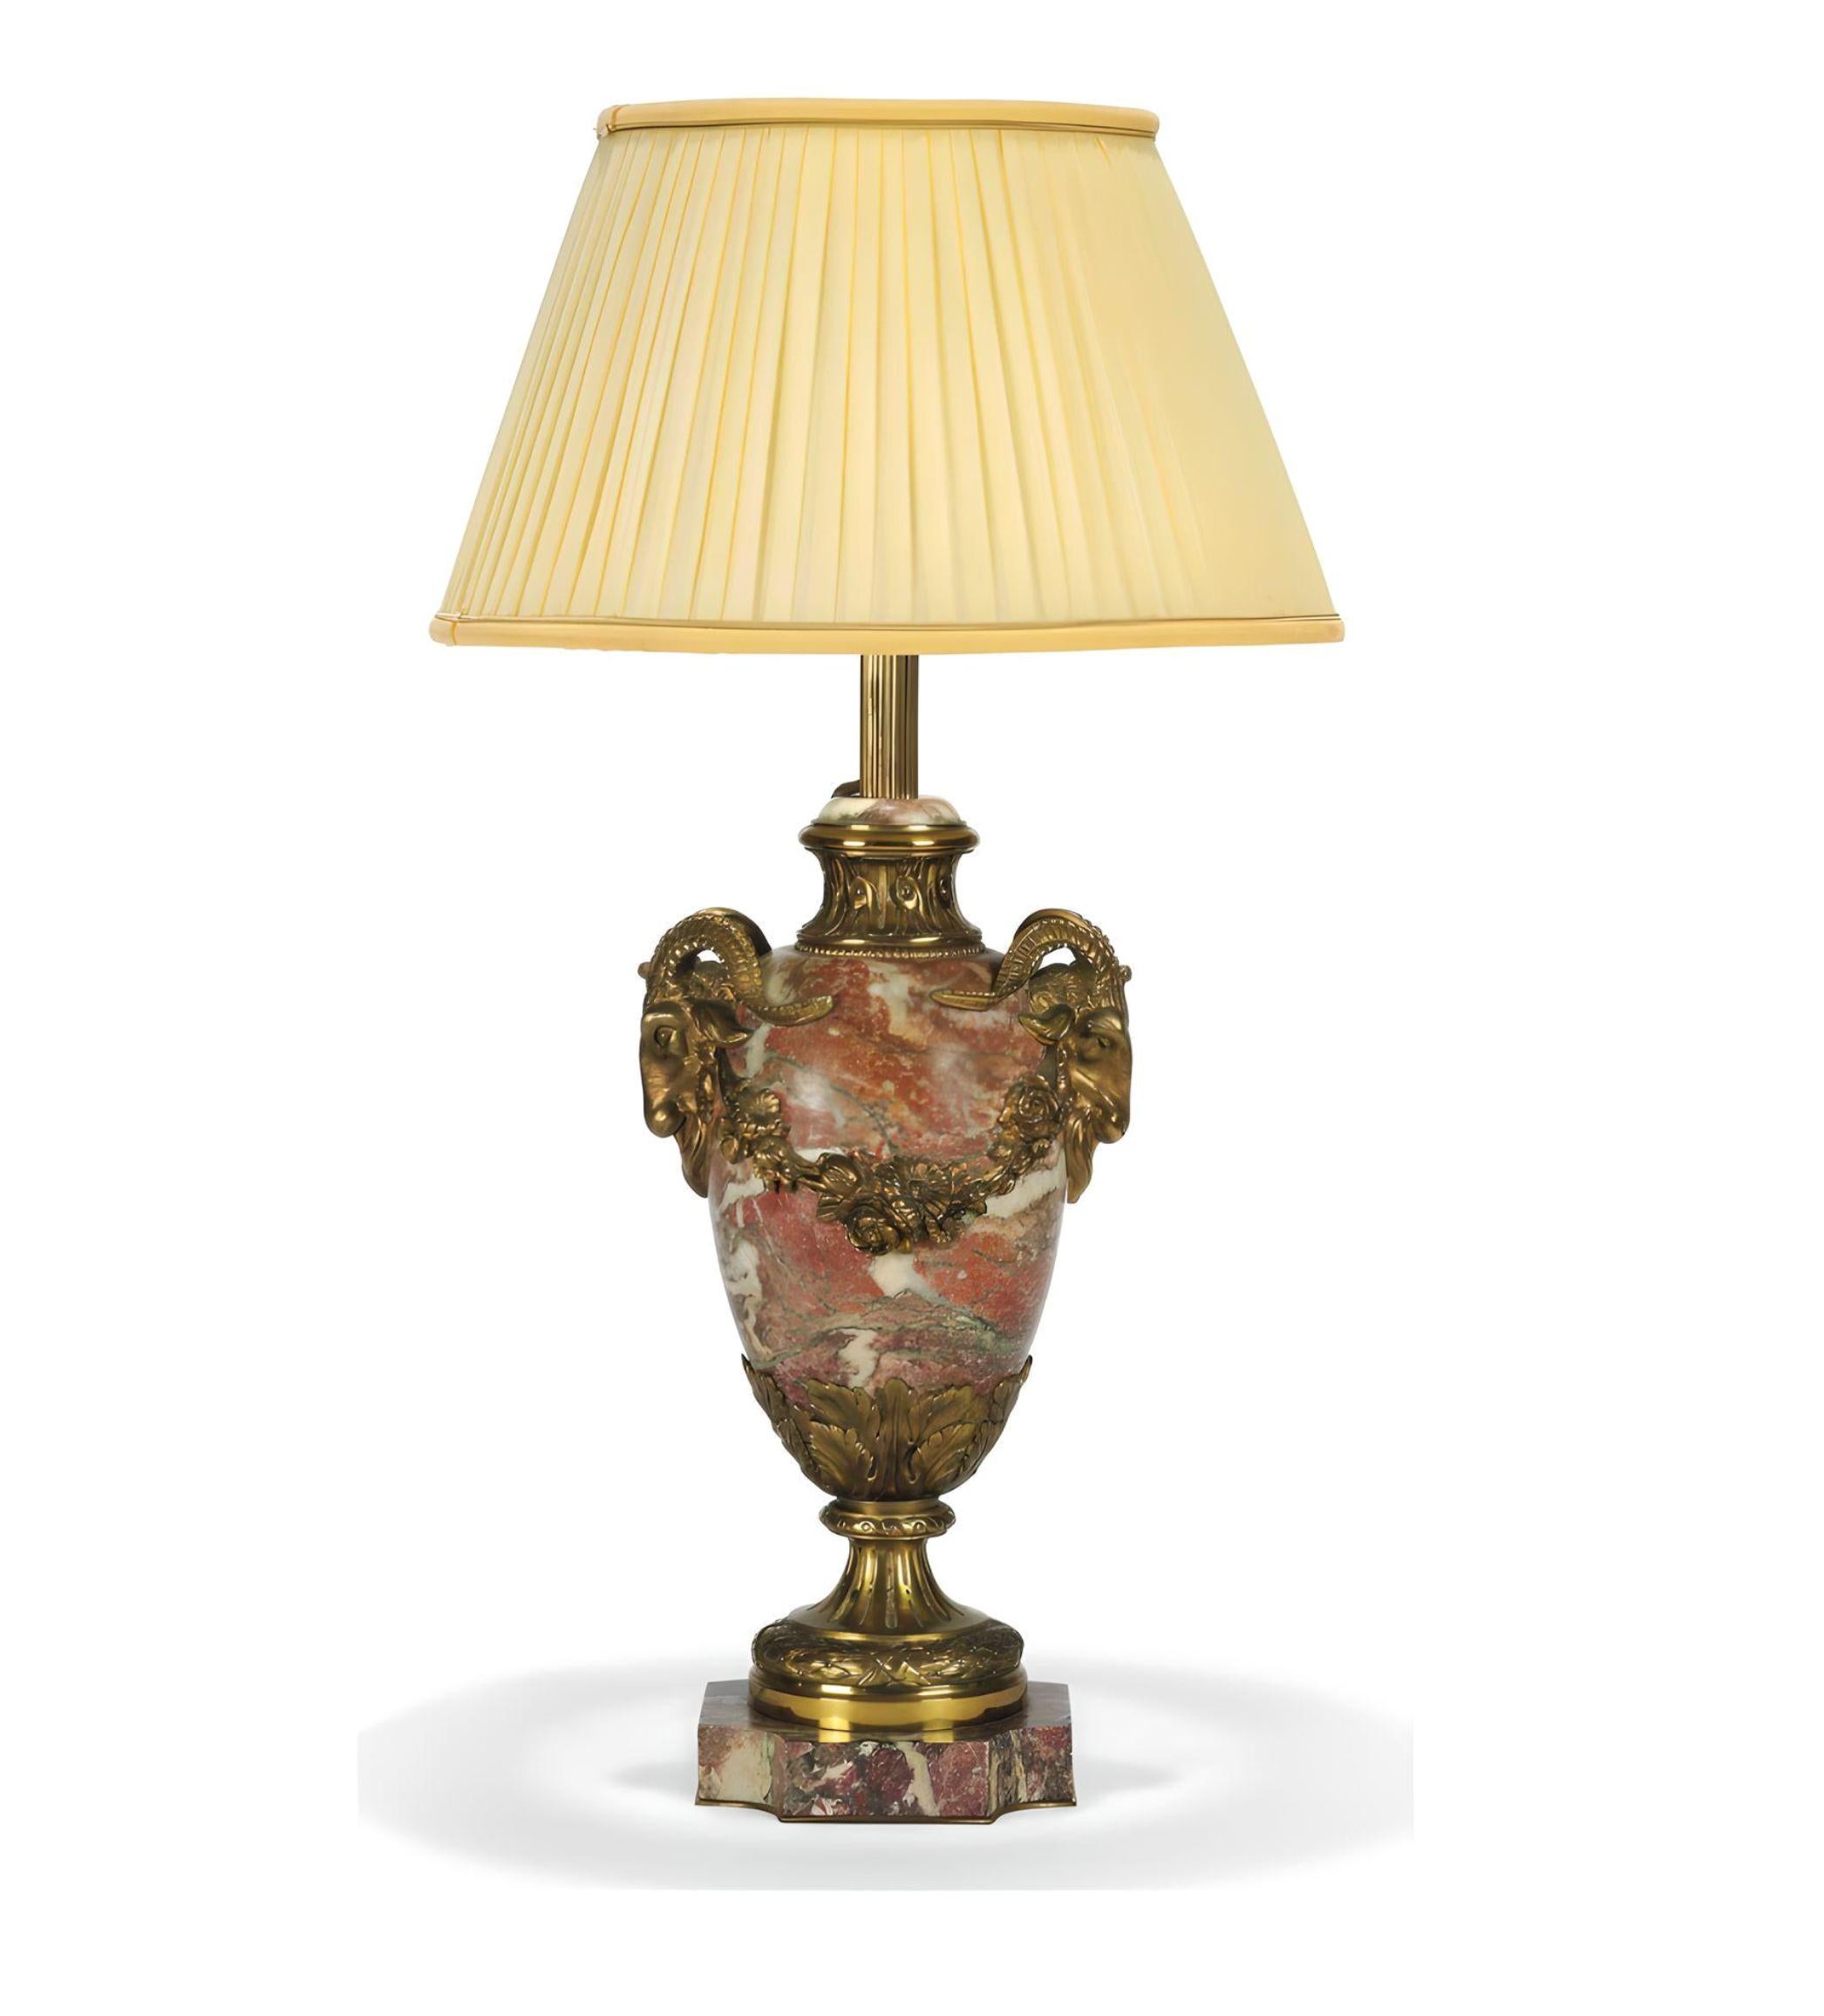 Lampe de table en marbre monté sur doré, début du 20e siècle. Extrêmement bien fabriqué avec les meilleurs matériaux.

Le corps de l'urne avec deux poignées en forme de masque de bélier sur une base carrée avec des coins rentrants, équipée pour